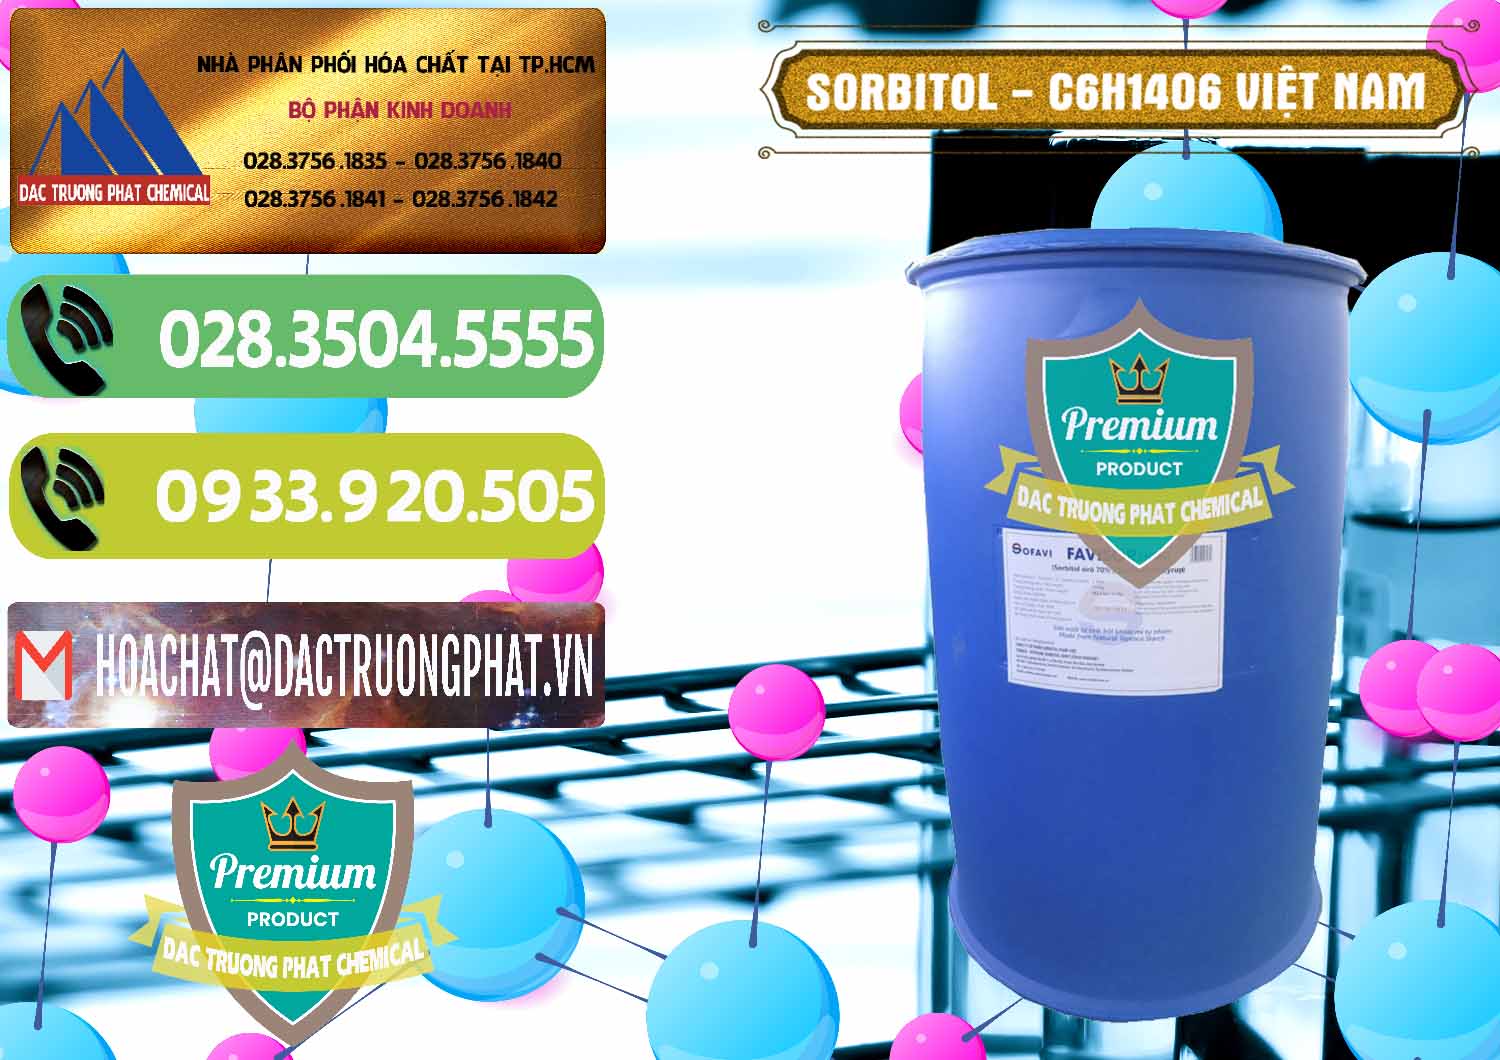 Nơi cung ứng - phân phối Sorbitol - C6H14O6 Lỏng 70% Food Grade Việt Nam - 0438 - Chuyên cung cấp _ phân phối hóa chất tại TP.HCM - hoachatmientay.vn